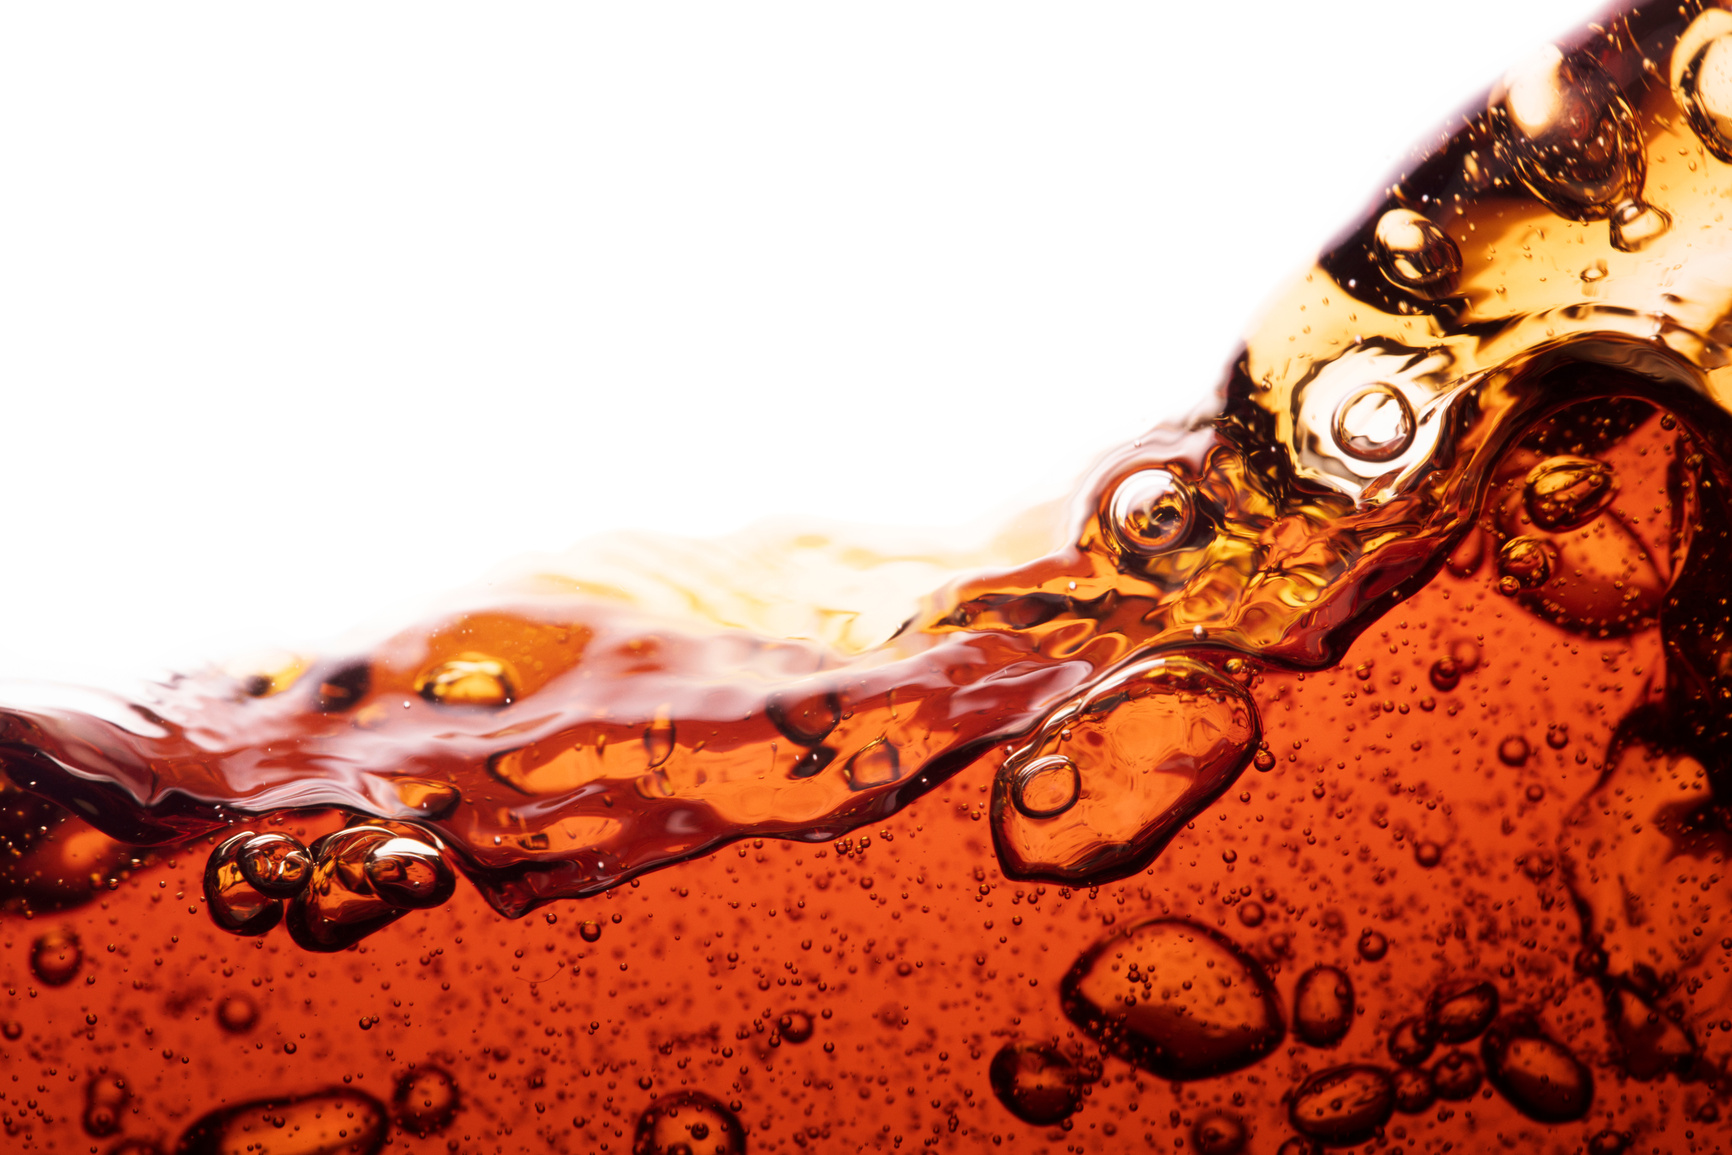 Splashing Coke soda